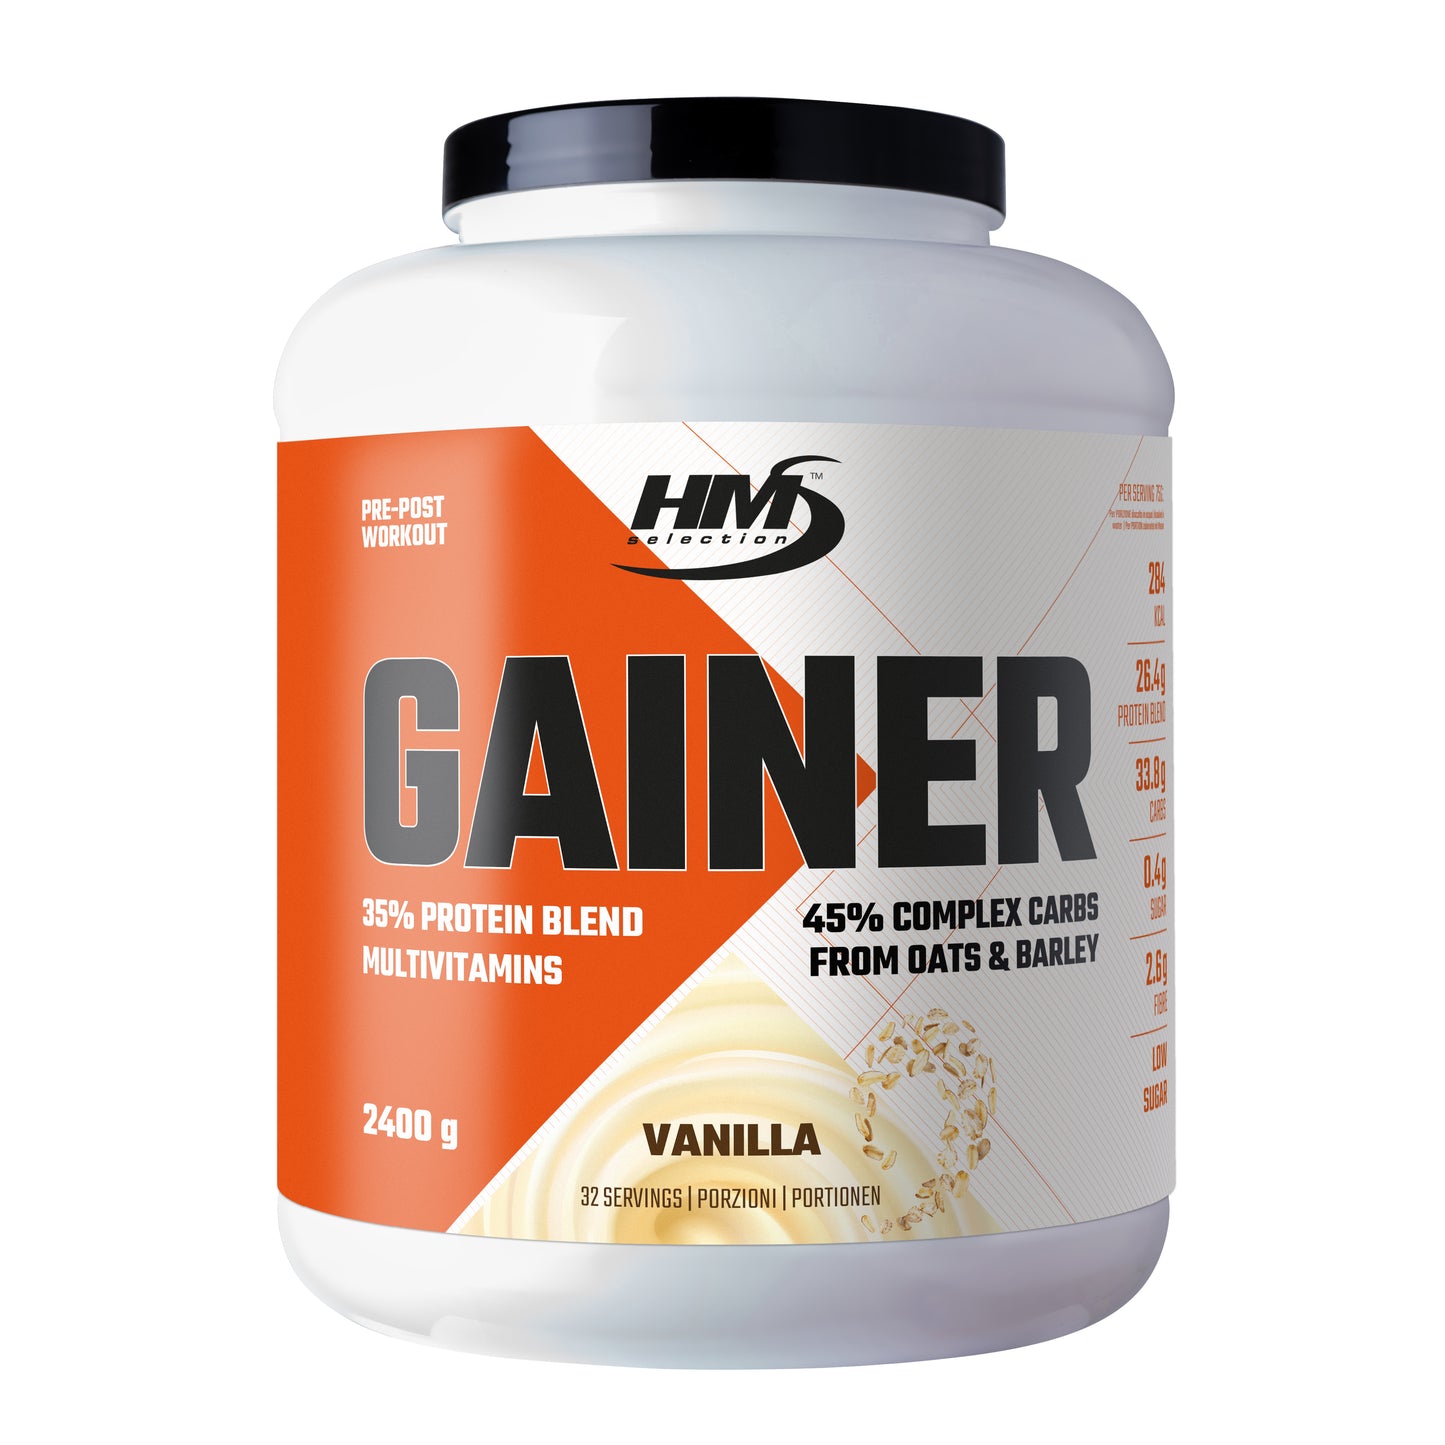 GAINER, 2400g - concentrato a base di carboidrati, proteine, vitamine e minerali